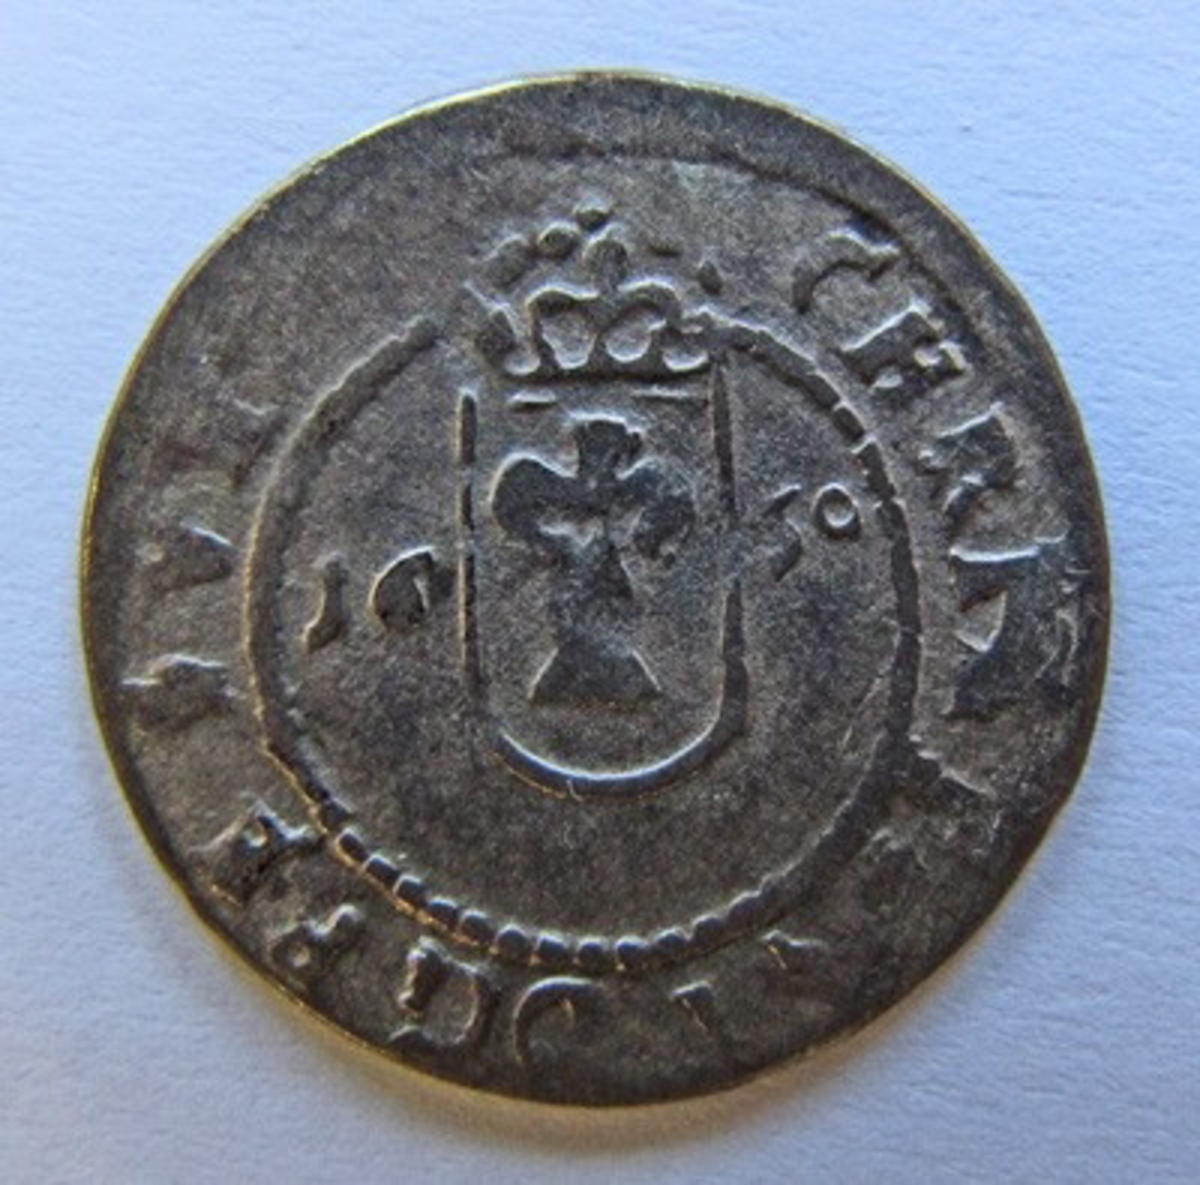 Besittningsmynt,  Kristina, 1 öre silvermynt. Präglat 1650 i Reval (Tallin) som var svensk mellan åren 1561-1710.